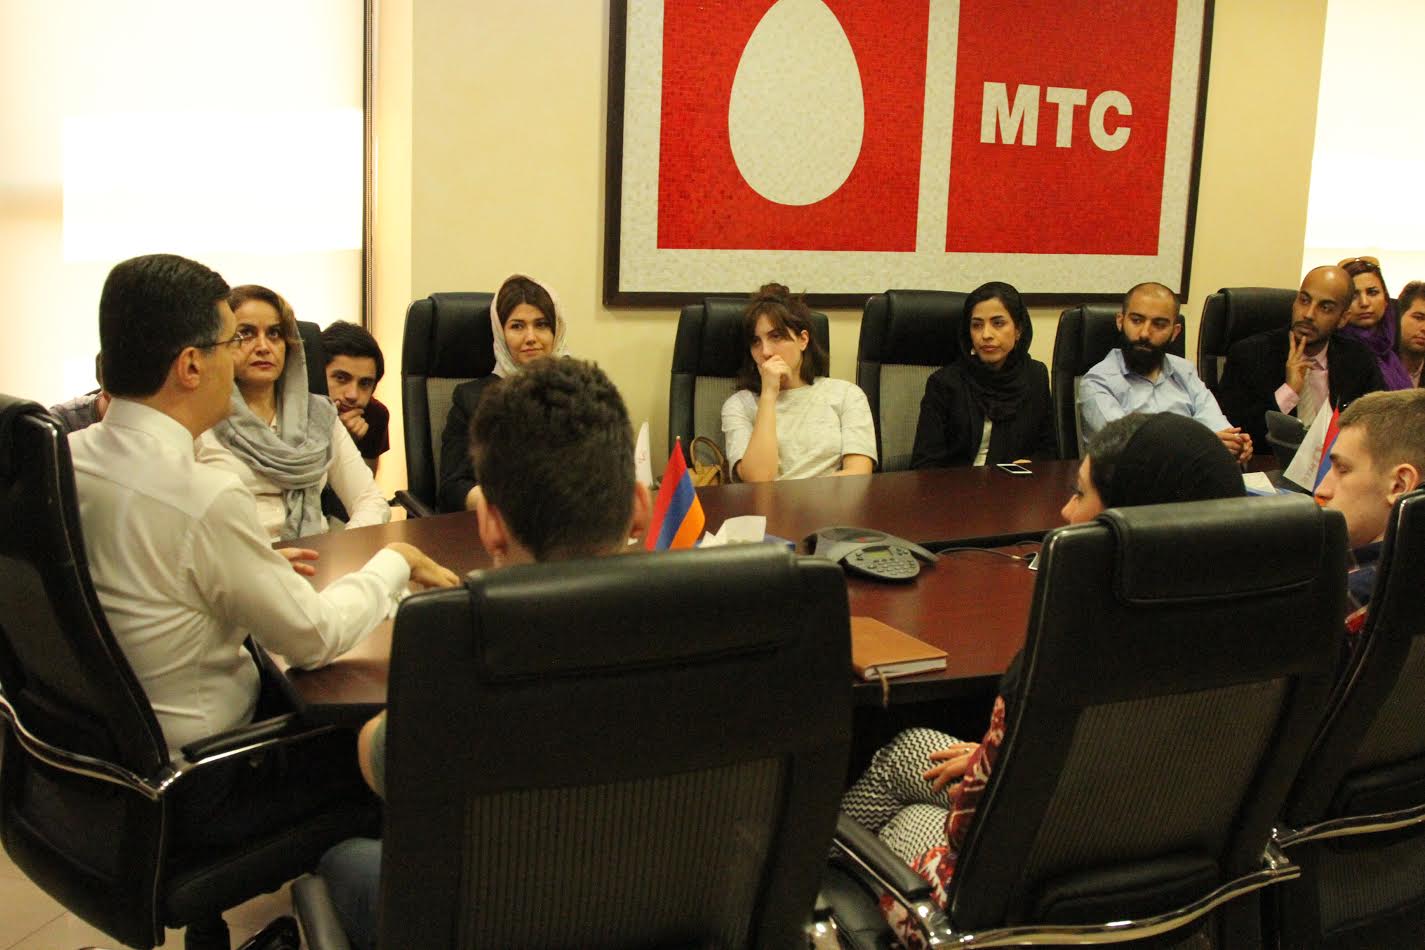 ՎիվաՍել-ՄՏՍ-ում հյուրընկալվել են Իրանից և Վրաստանից ժամանած երիտասարդներ